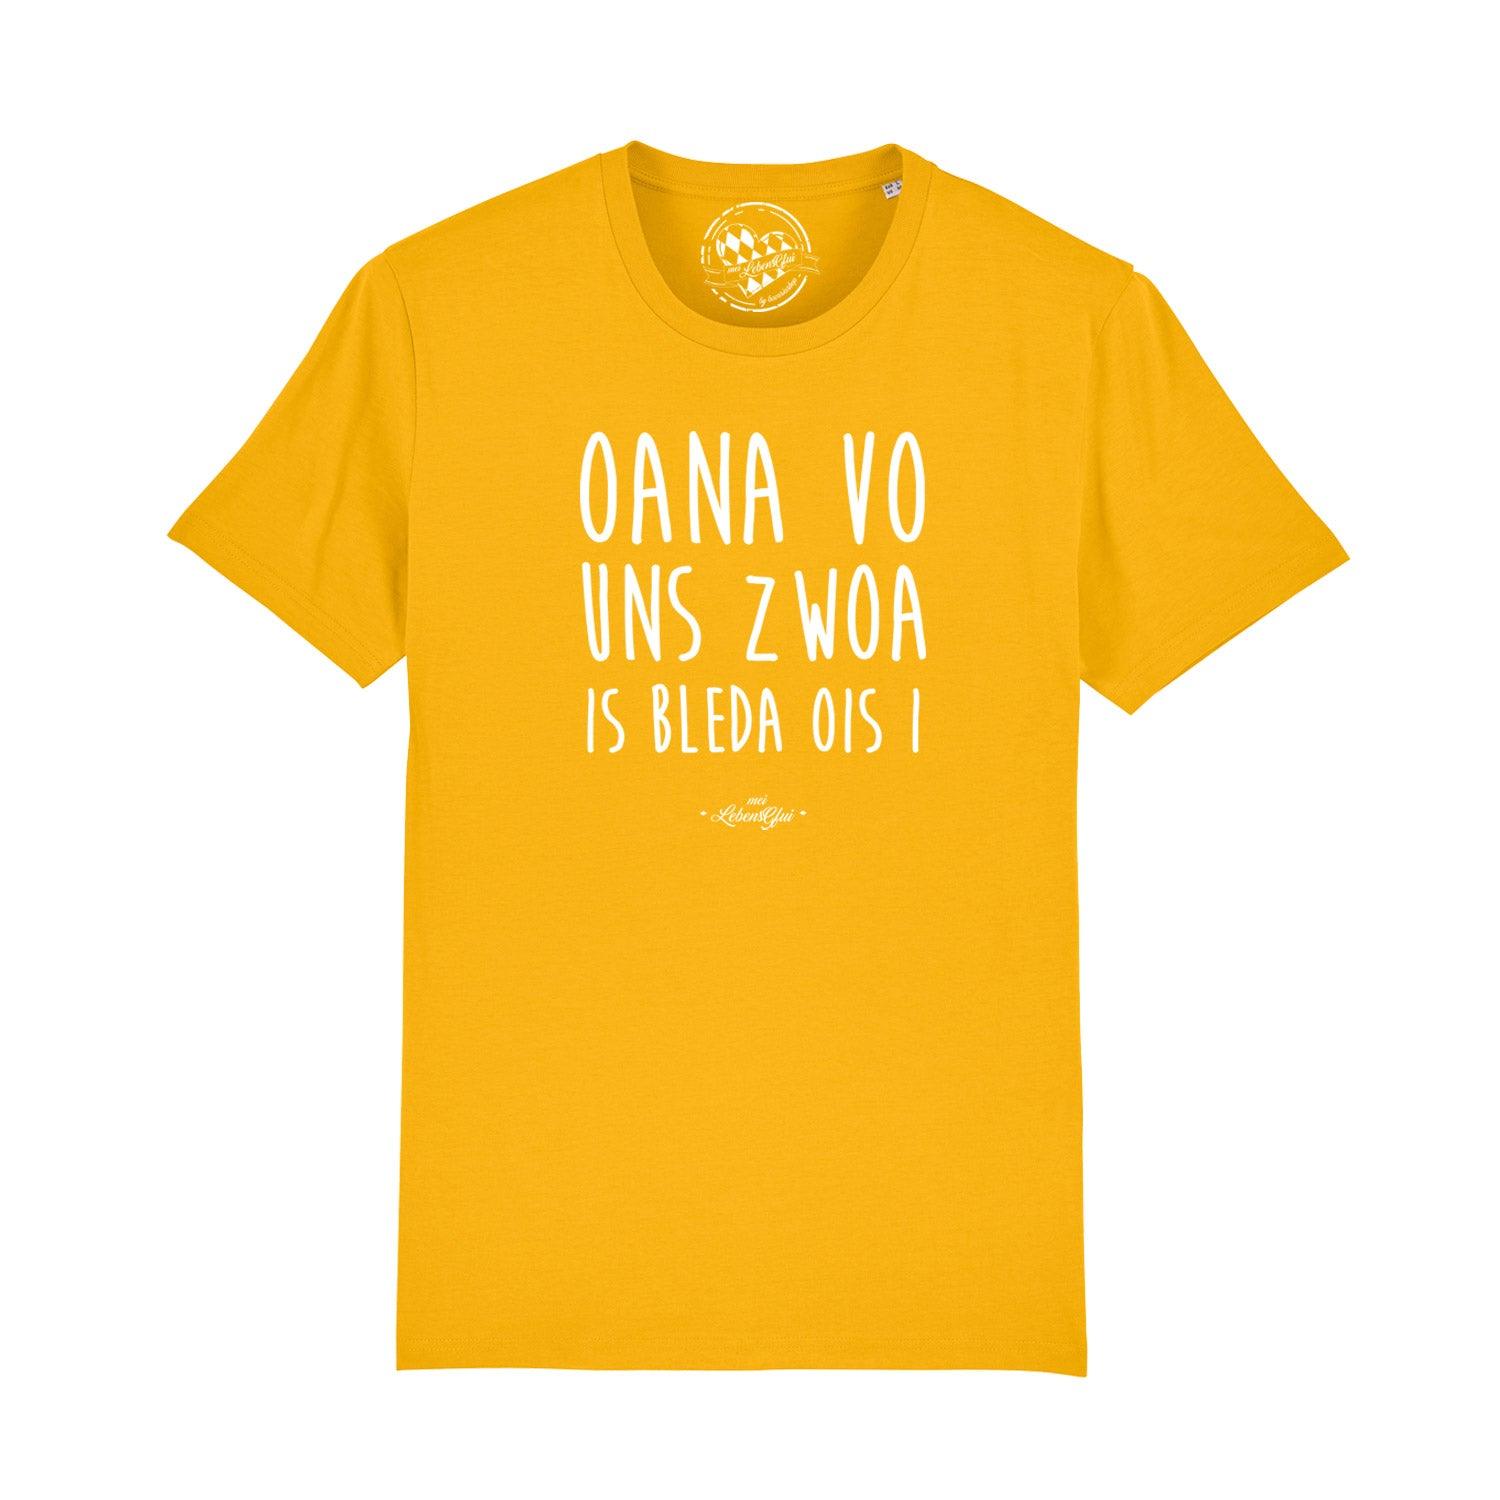 Herren T-Shirt Oana vo uns zwoa • ®mei LebensGfui kaufen